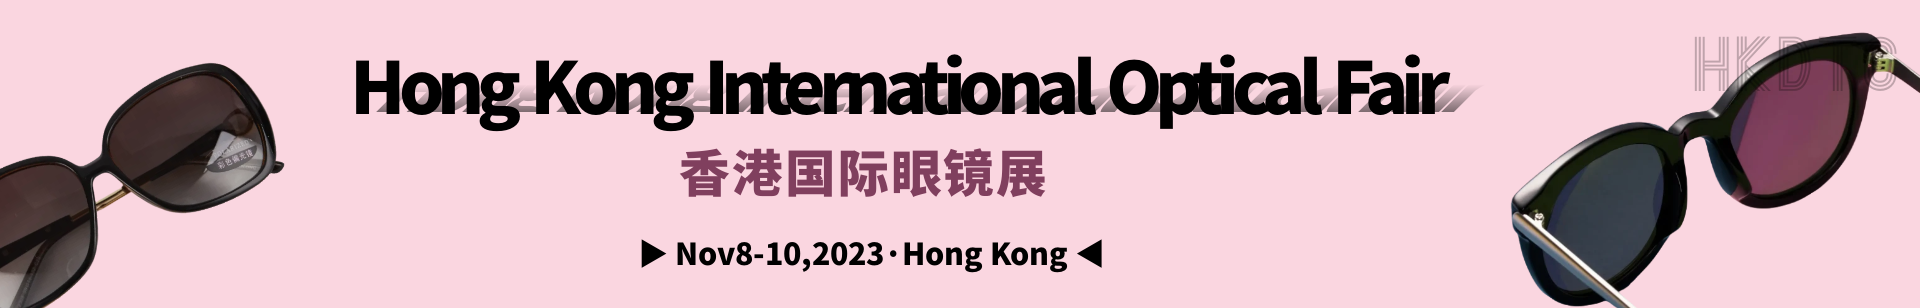 Hong Kong International Optical Fair